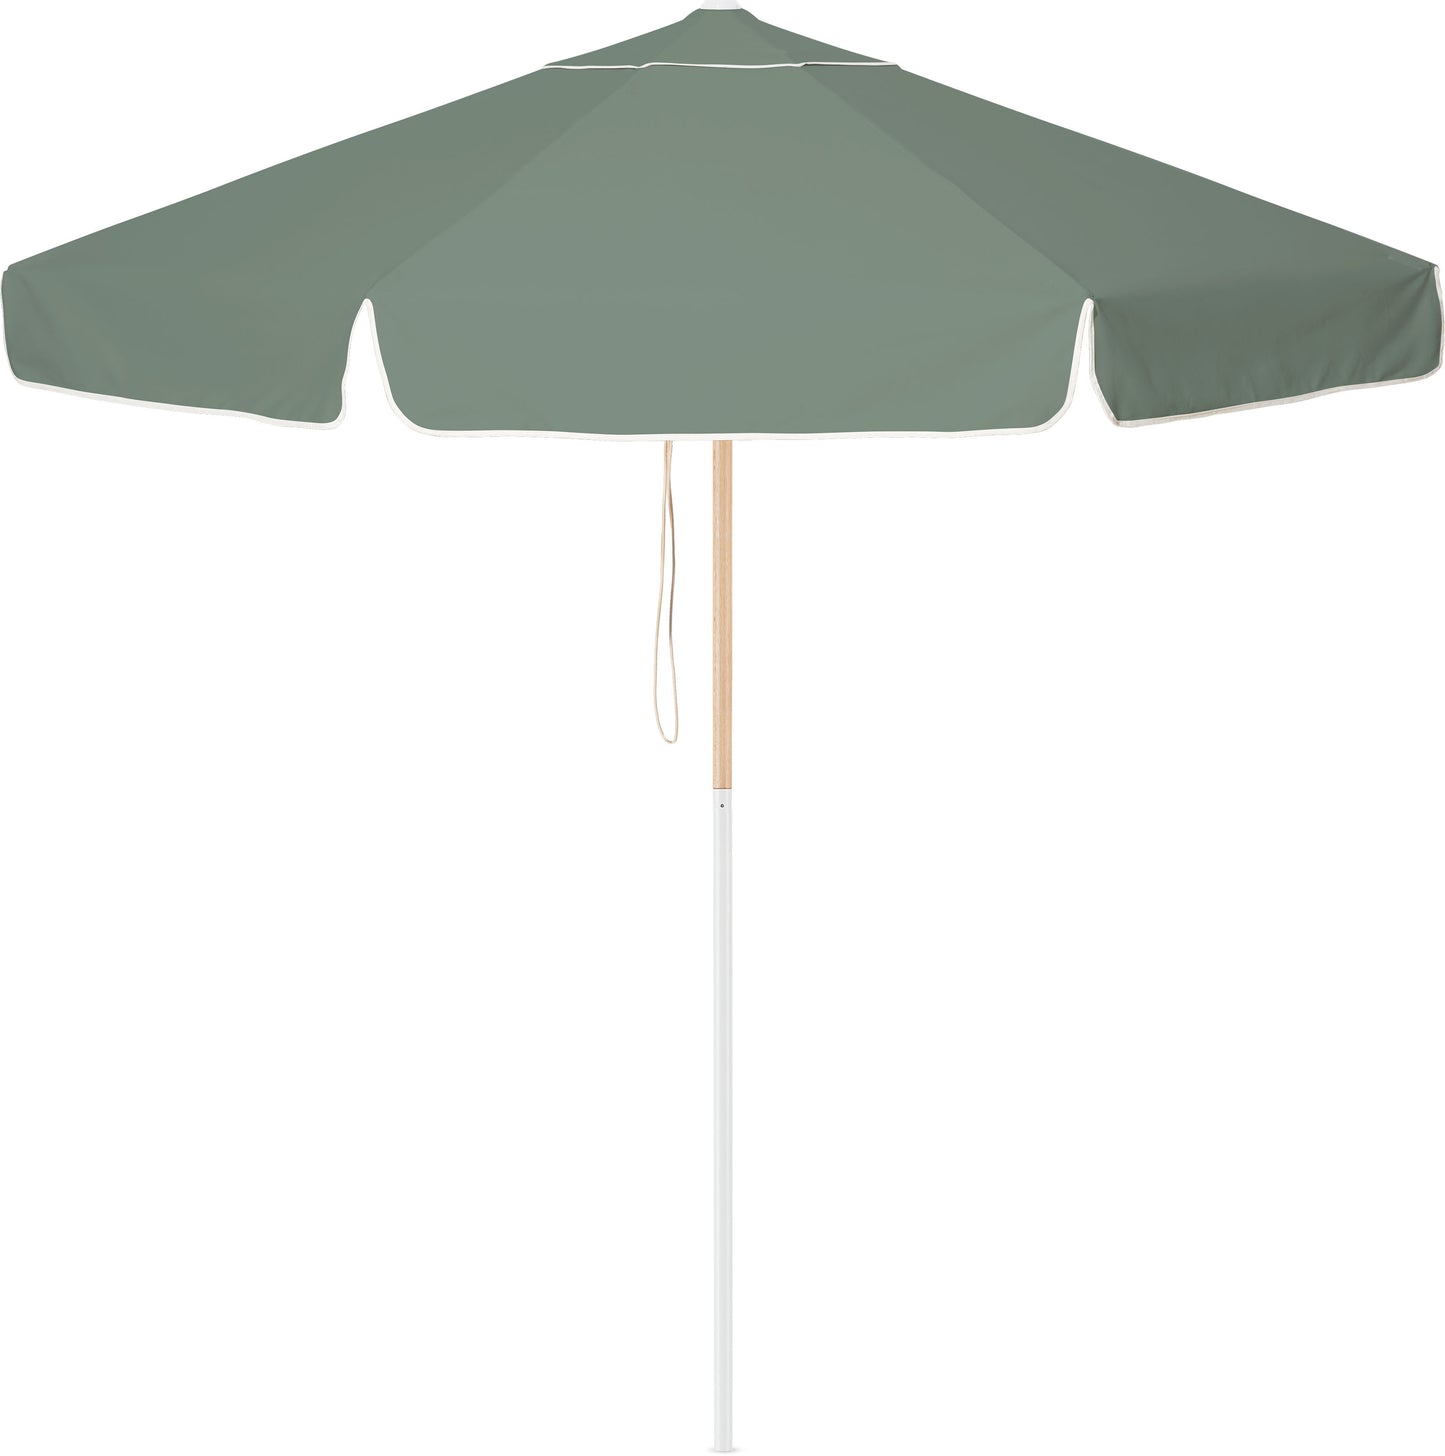 Tallow Market Umbrella